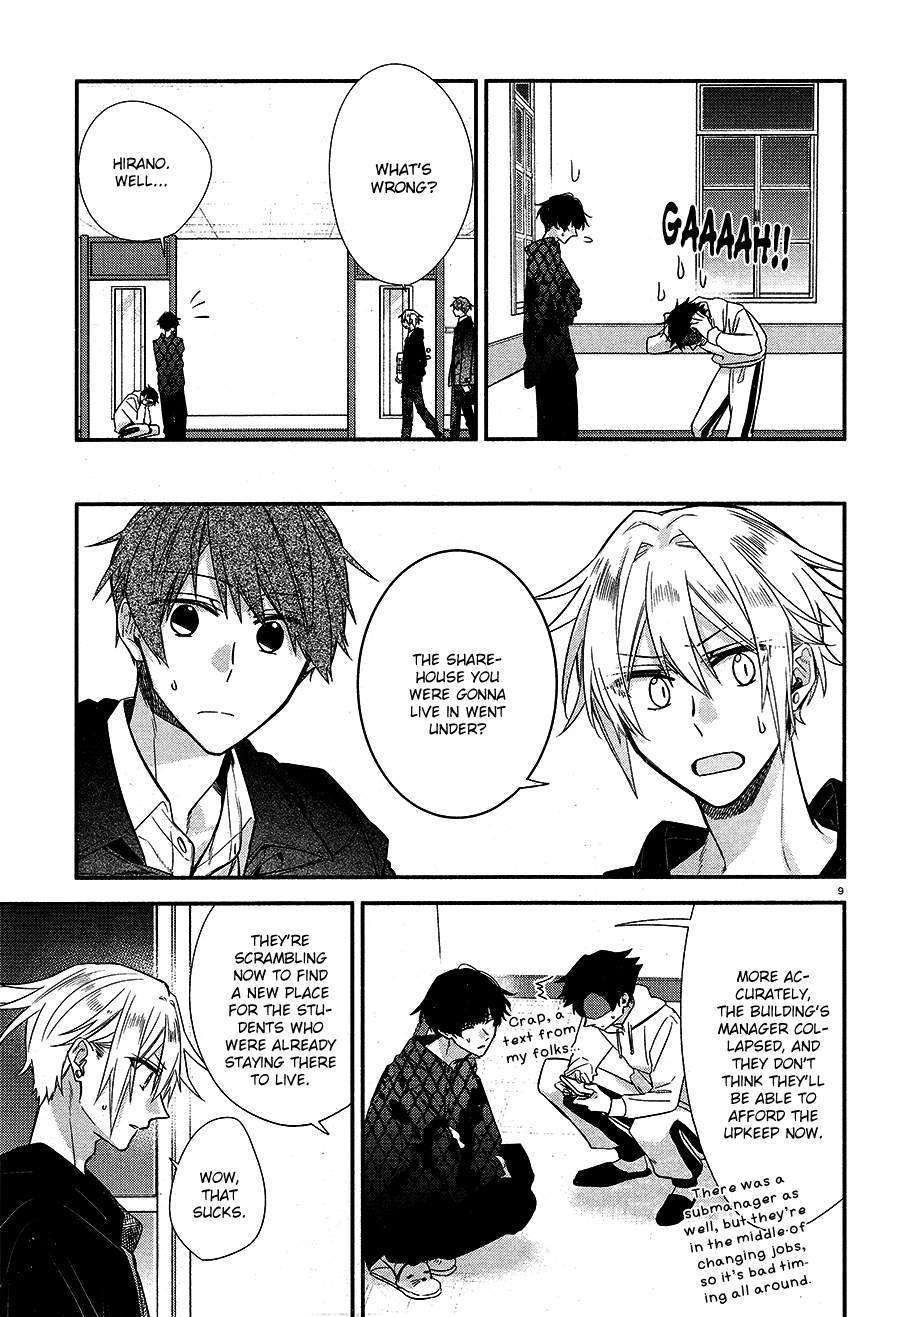 Hirano To Kagiura - 10 page 12